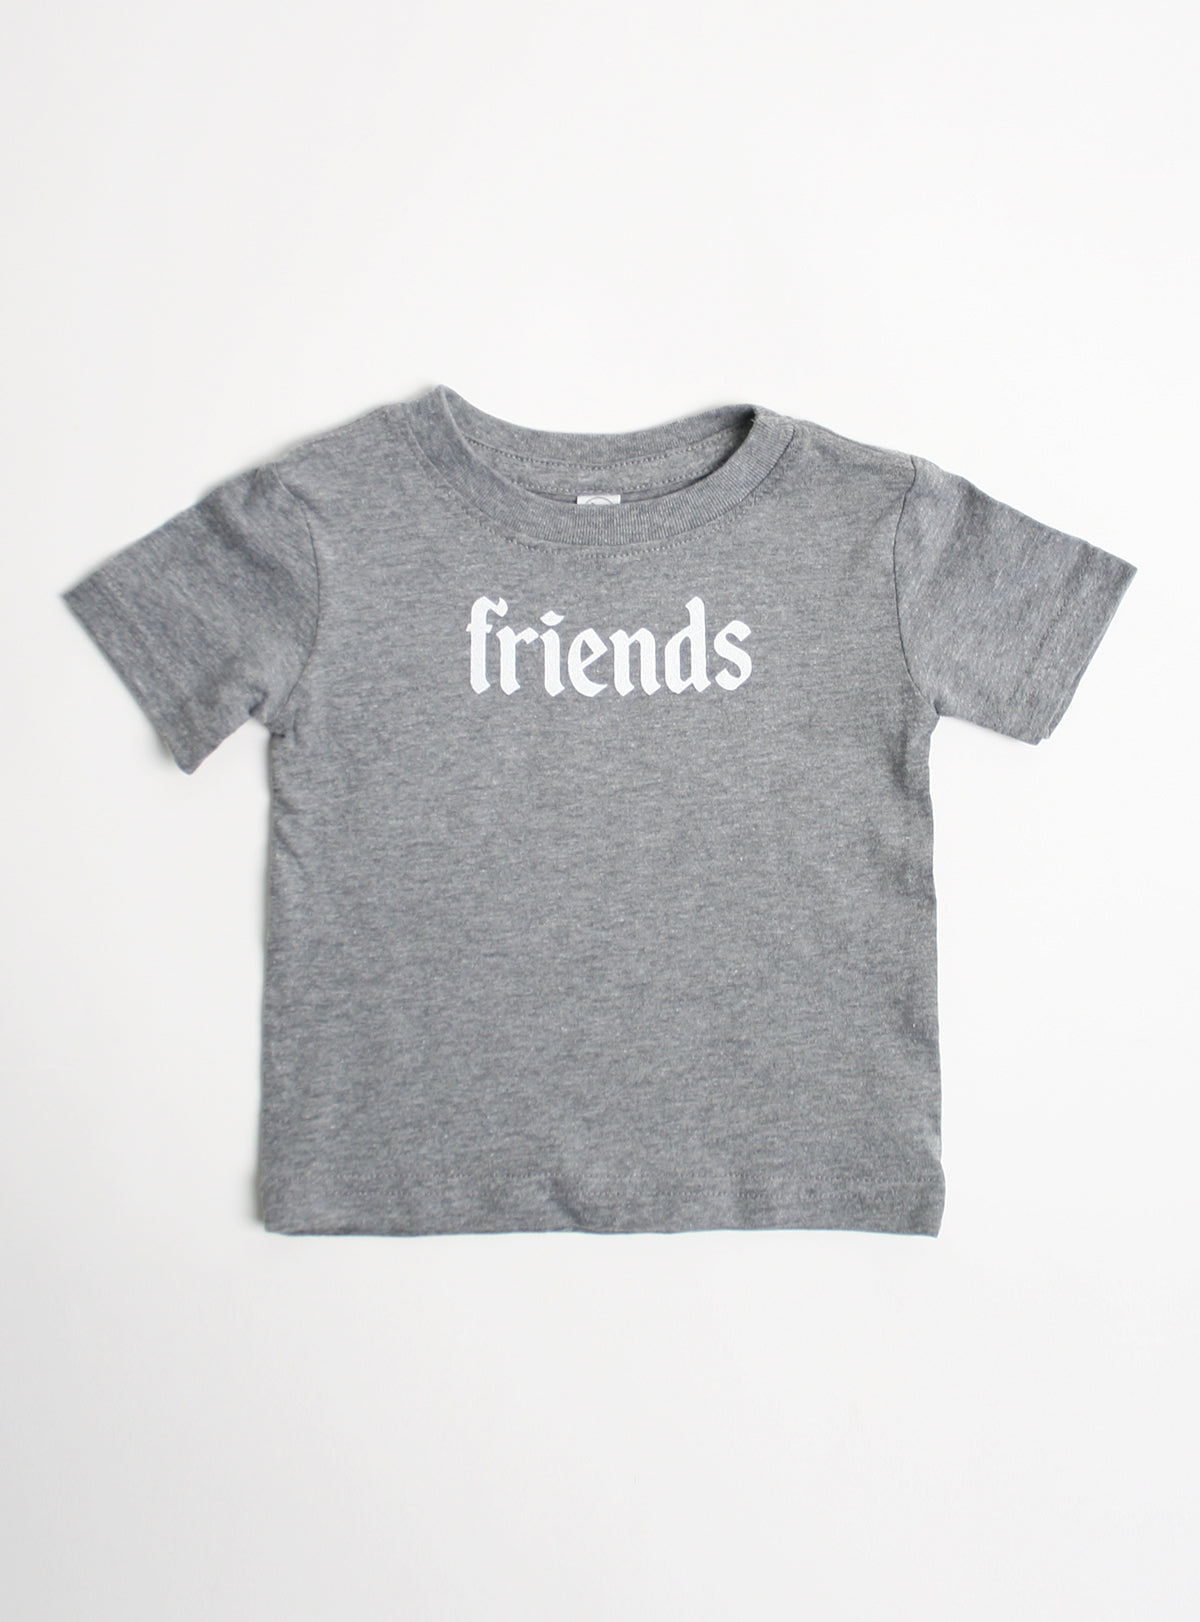 Best Friends Matching T-Shirt Set